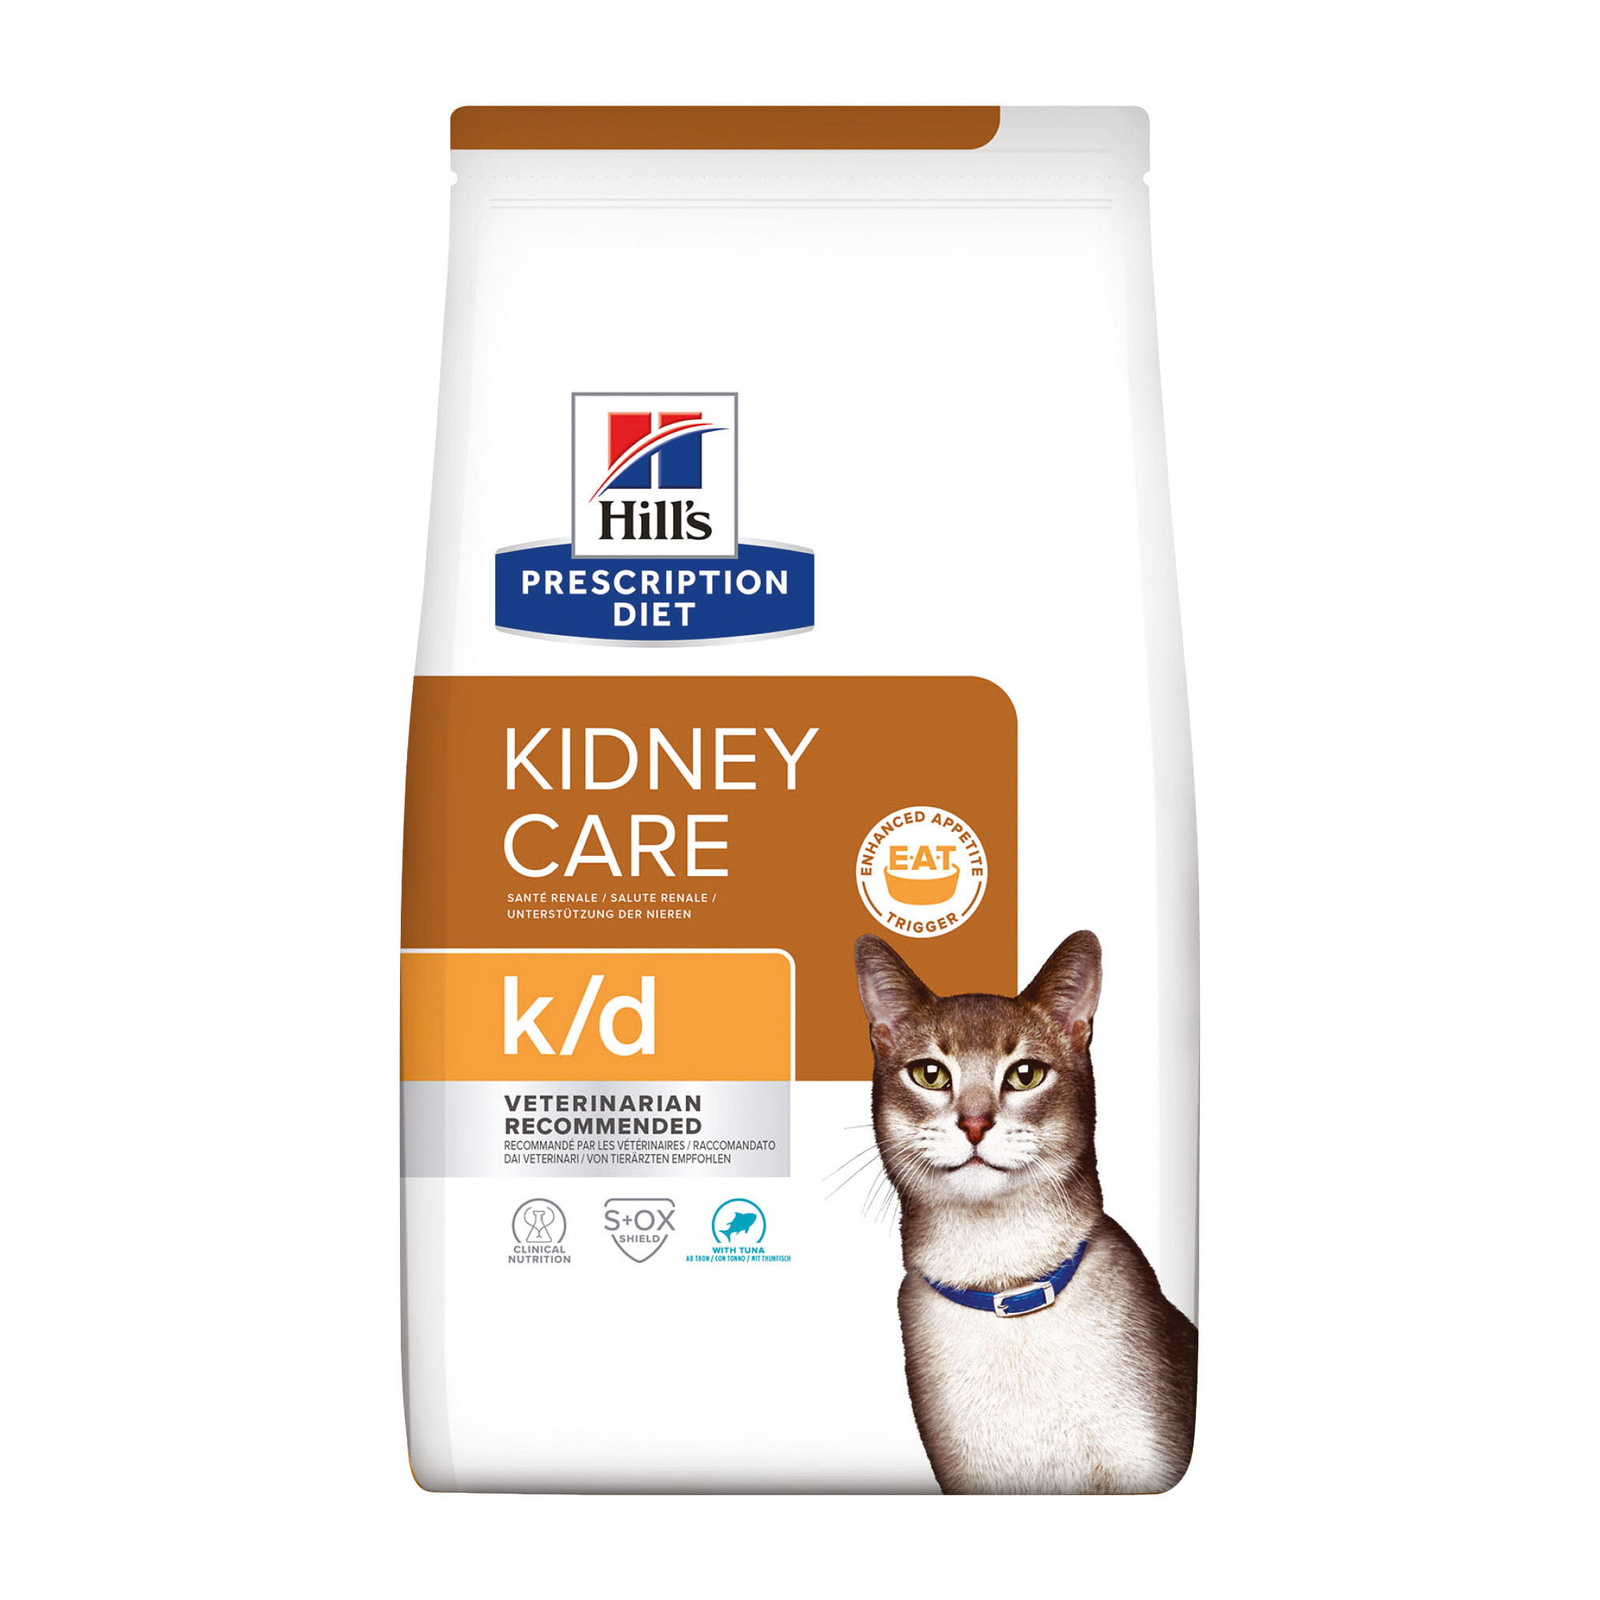 Hill's Prescription Diet k/d Kidney Care сухой диетический, для кошек при профилактике заболеваний почек, с тунцом (400 г)